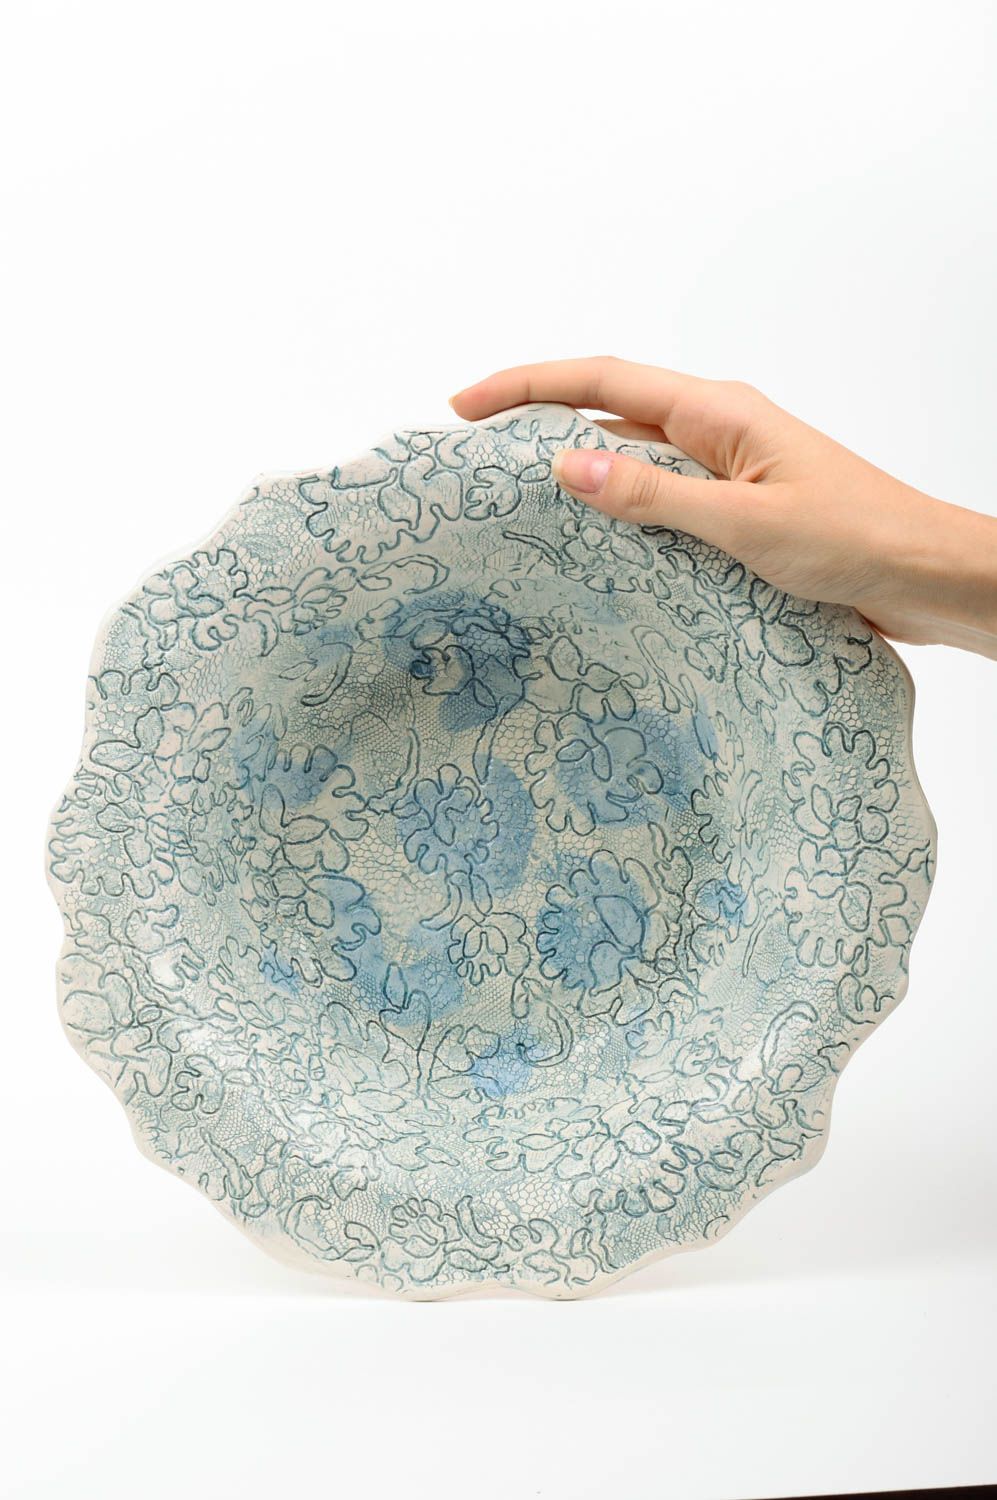 Глиняная тарелка с глазурью круглая красивая небольшая с узорами ручная работа фото 2